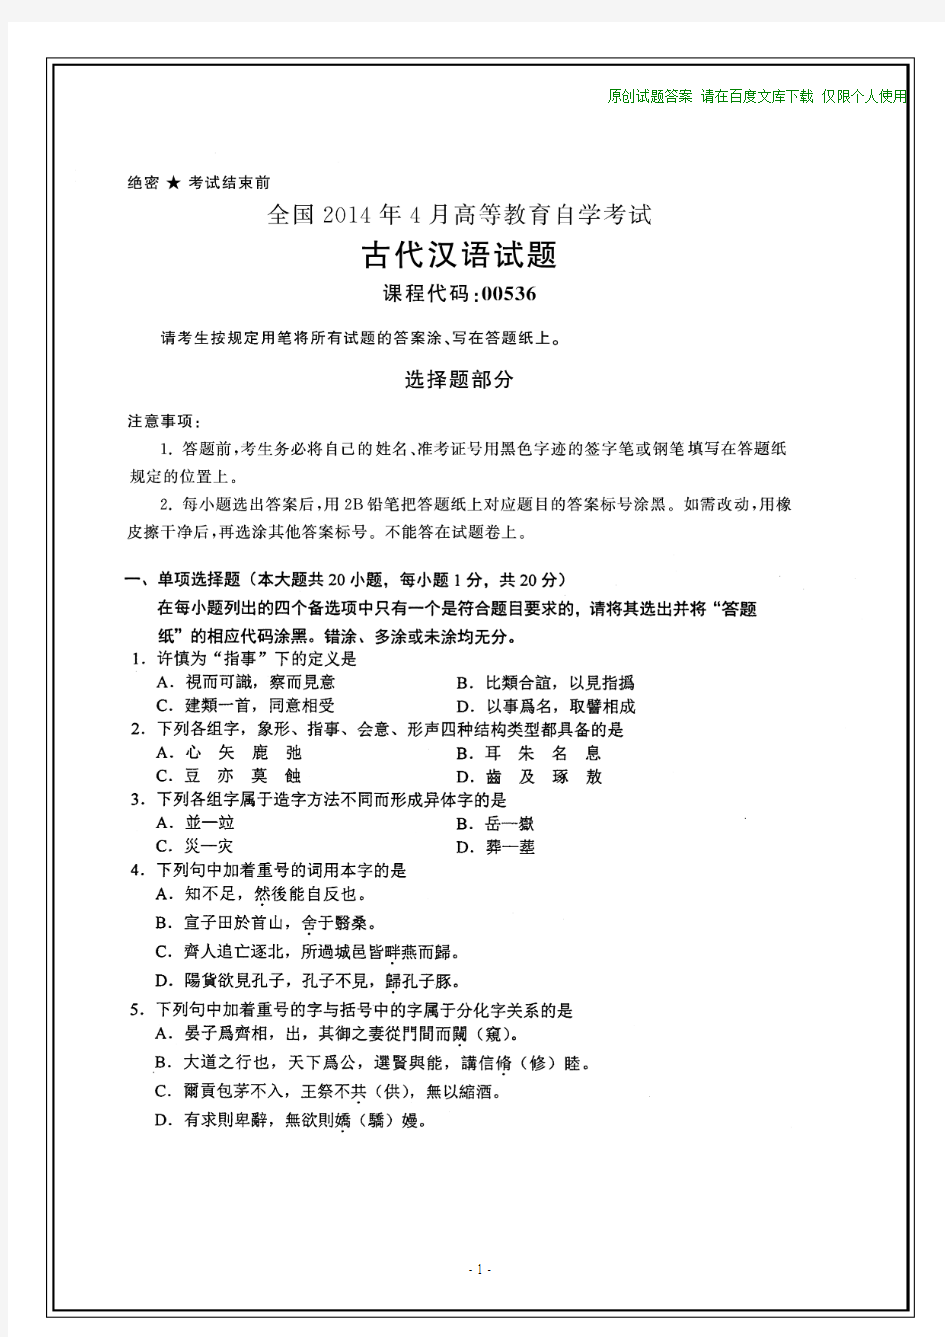 全国2014年4月自考古代汉语试题和答案(在最后)